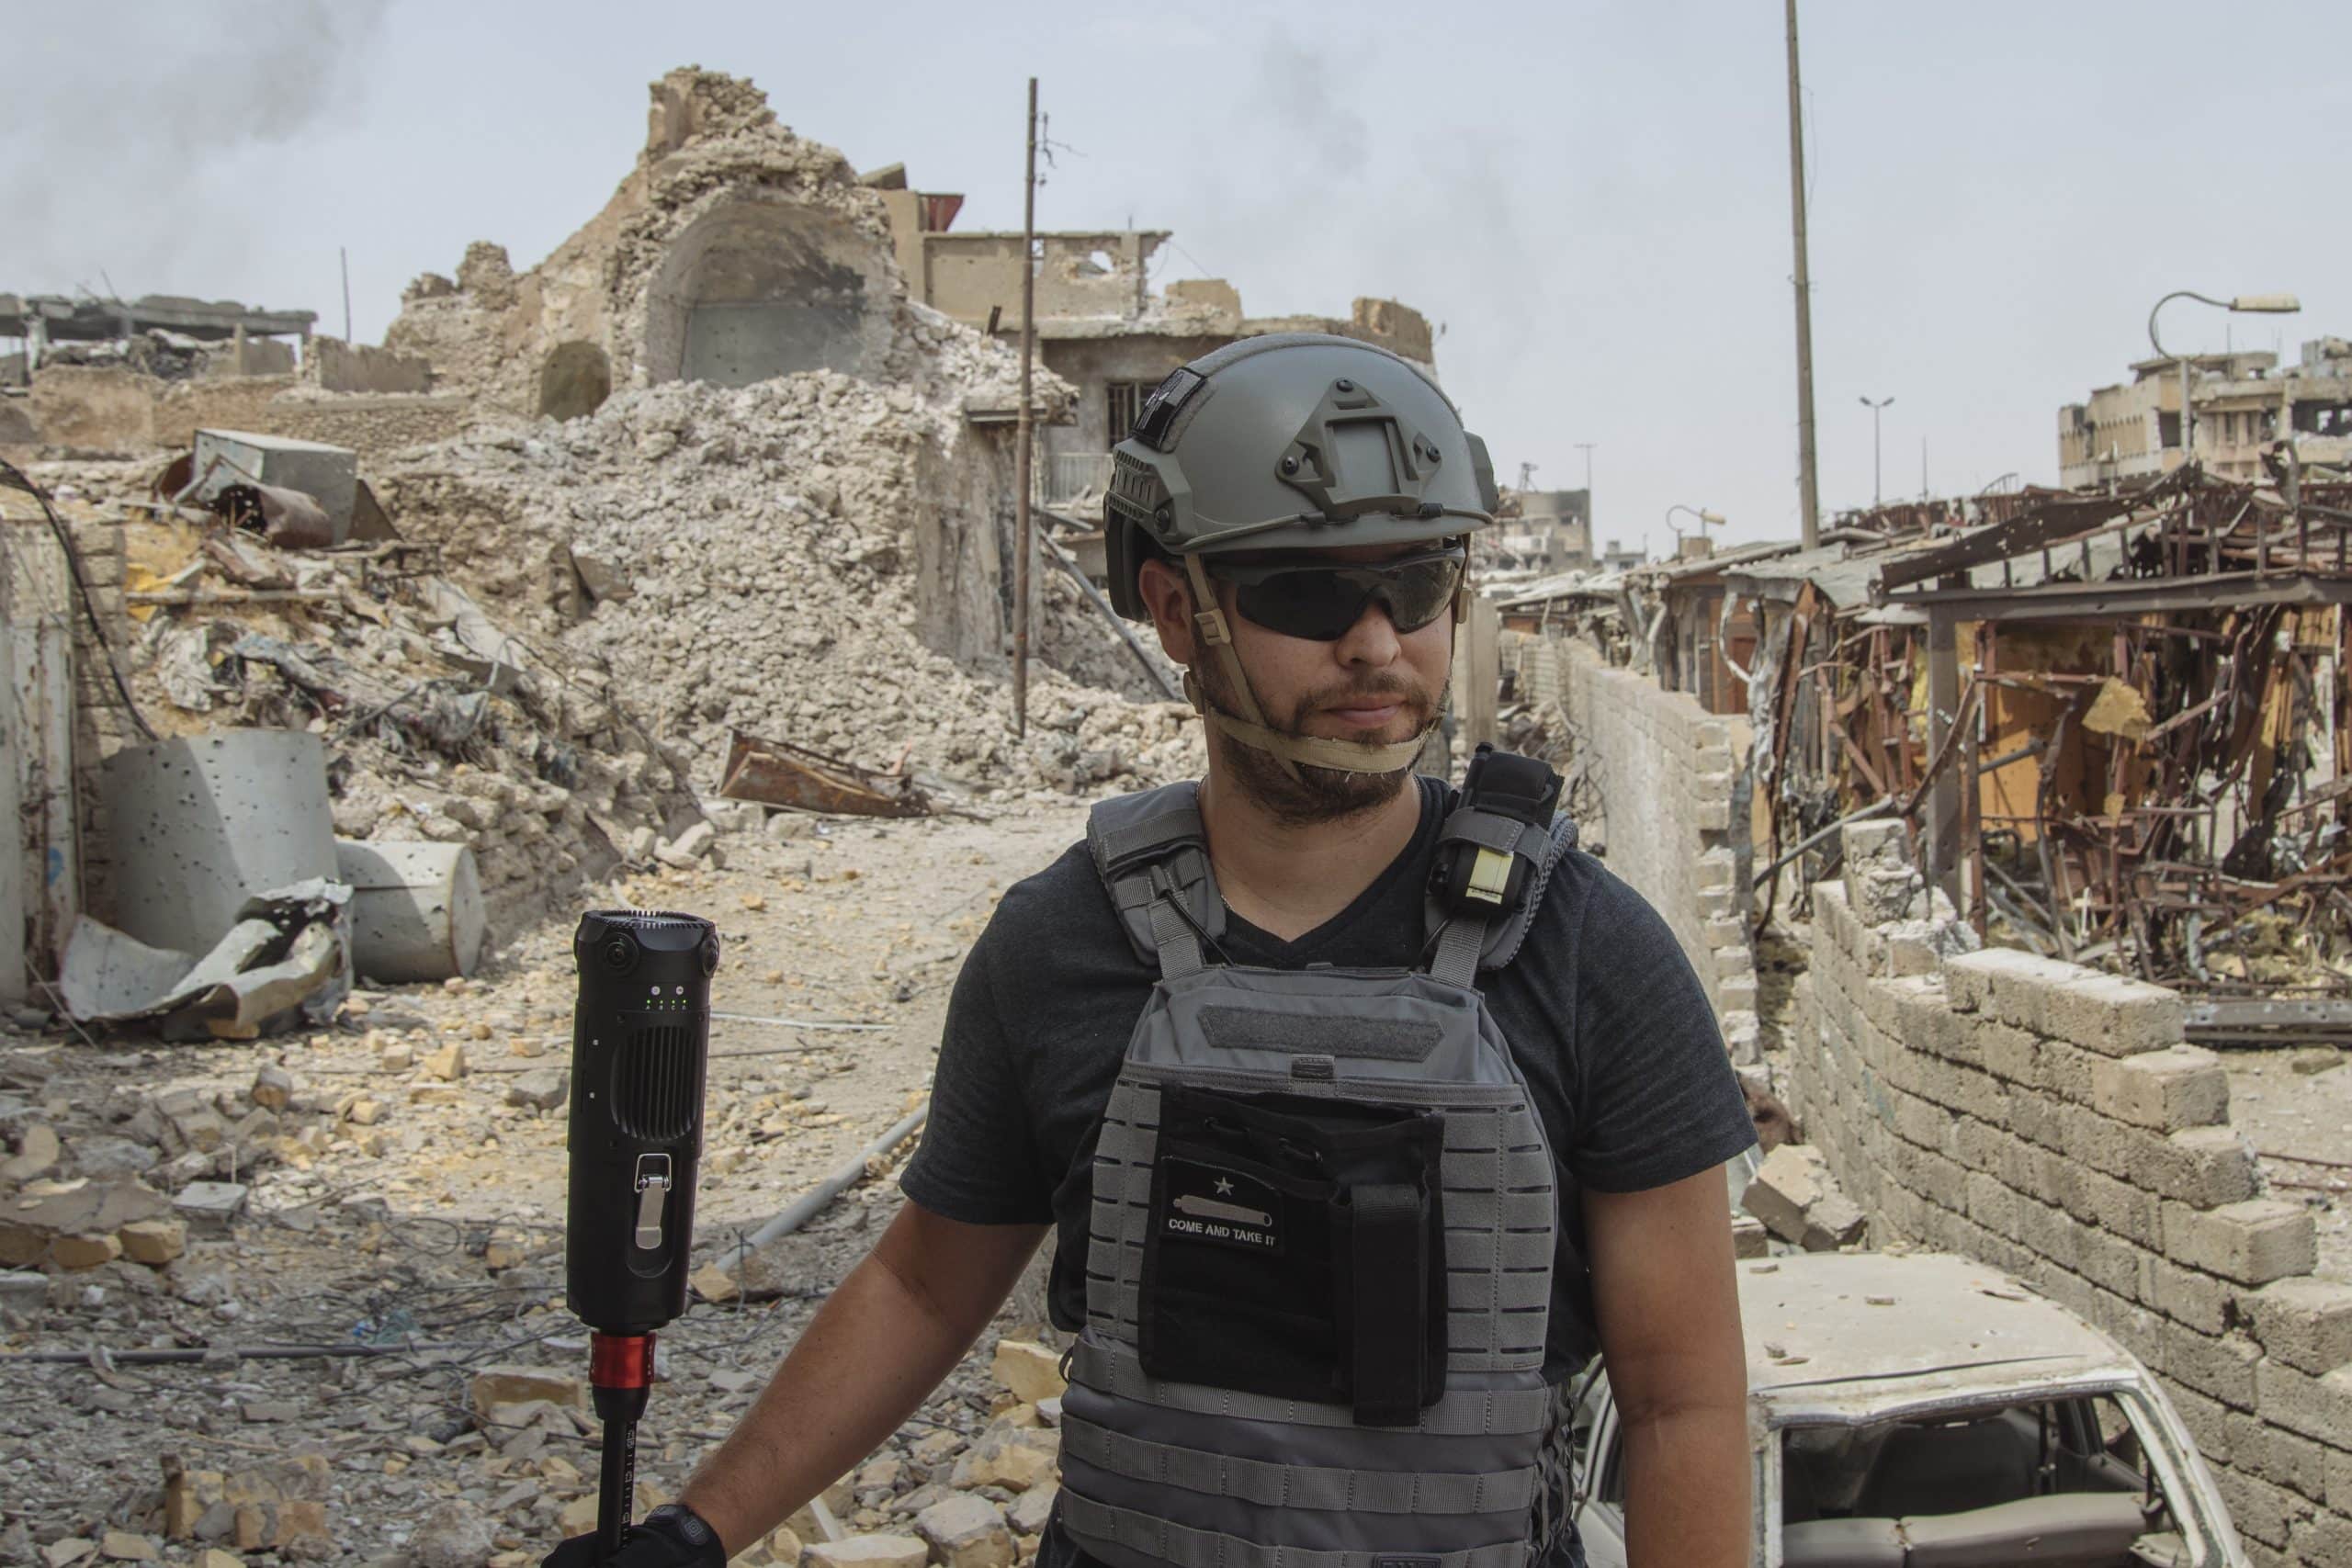 The VR Filmmaker Who Shoots in Active War Zones